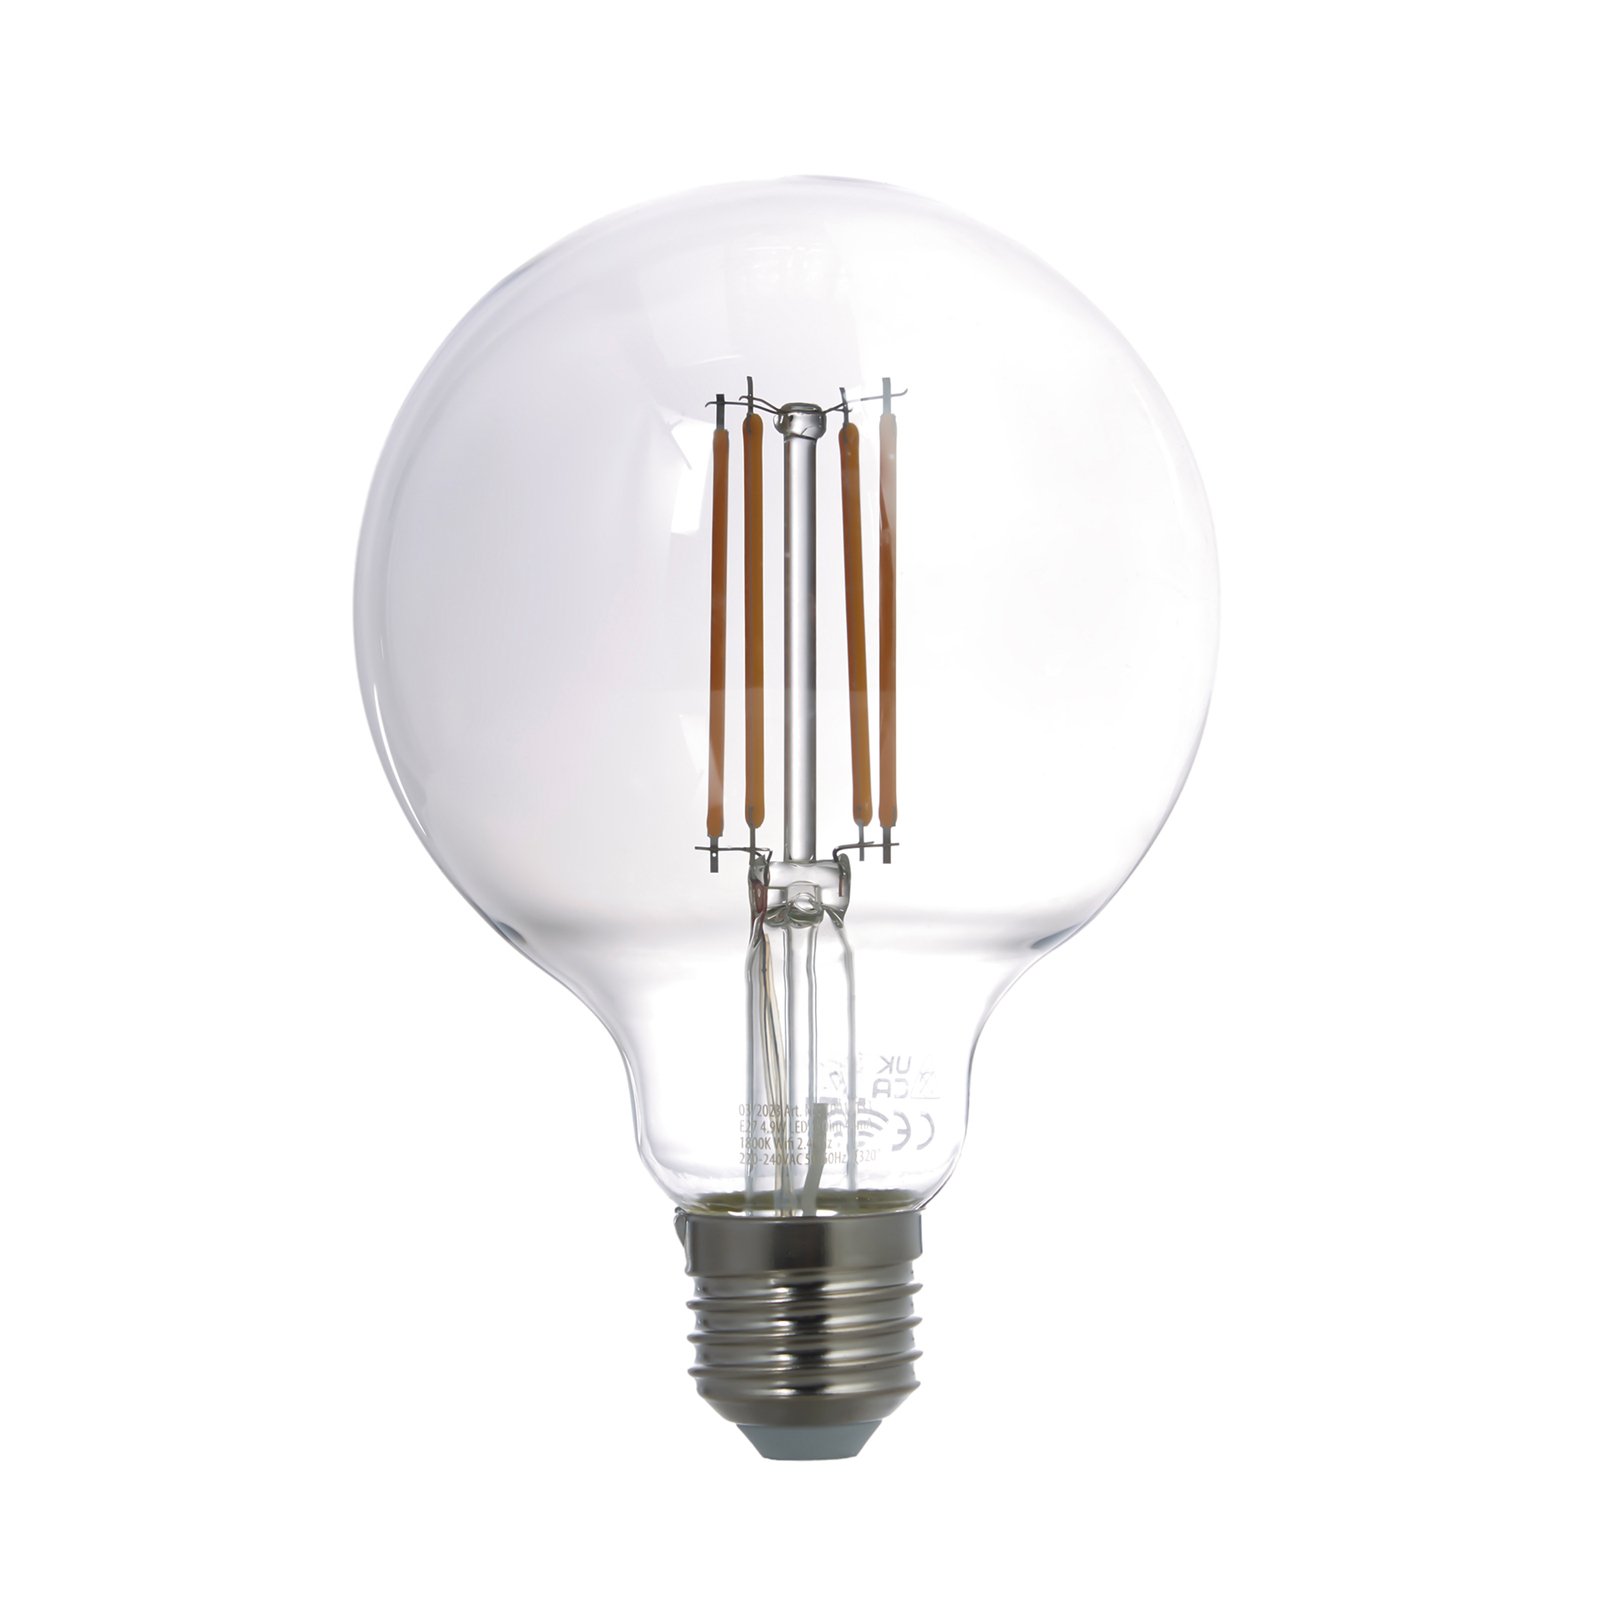 LUUMR Smart ampoule globe LED E27 gris fumé 4,9W Tuya WLAN